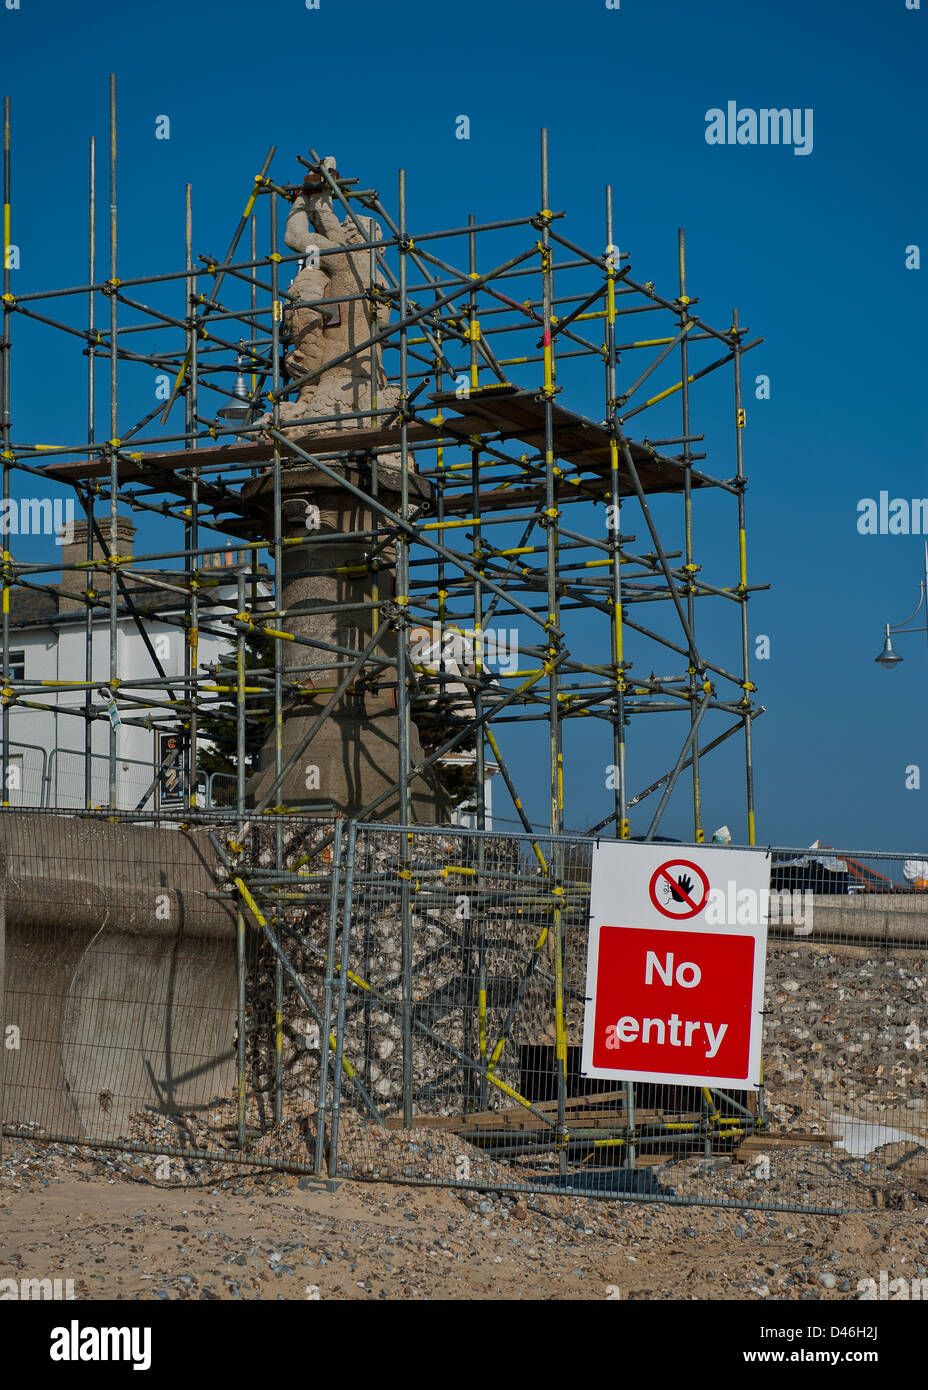 Sur le front de la statue de Lowestoft, entreprise de réparation urgente. Aucun signe d'entrée de la plage. Elles ne sont pas accessibles au public. Banque D'Images